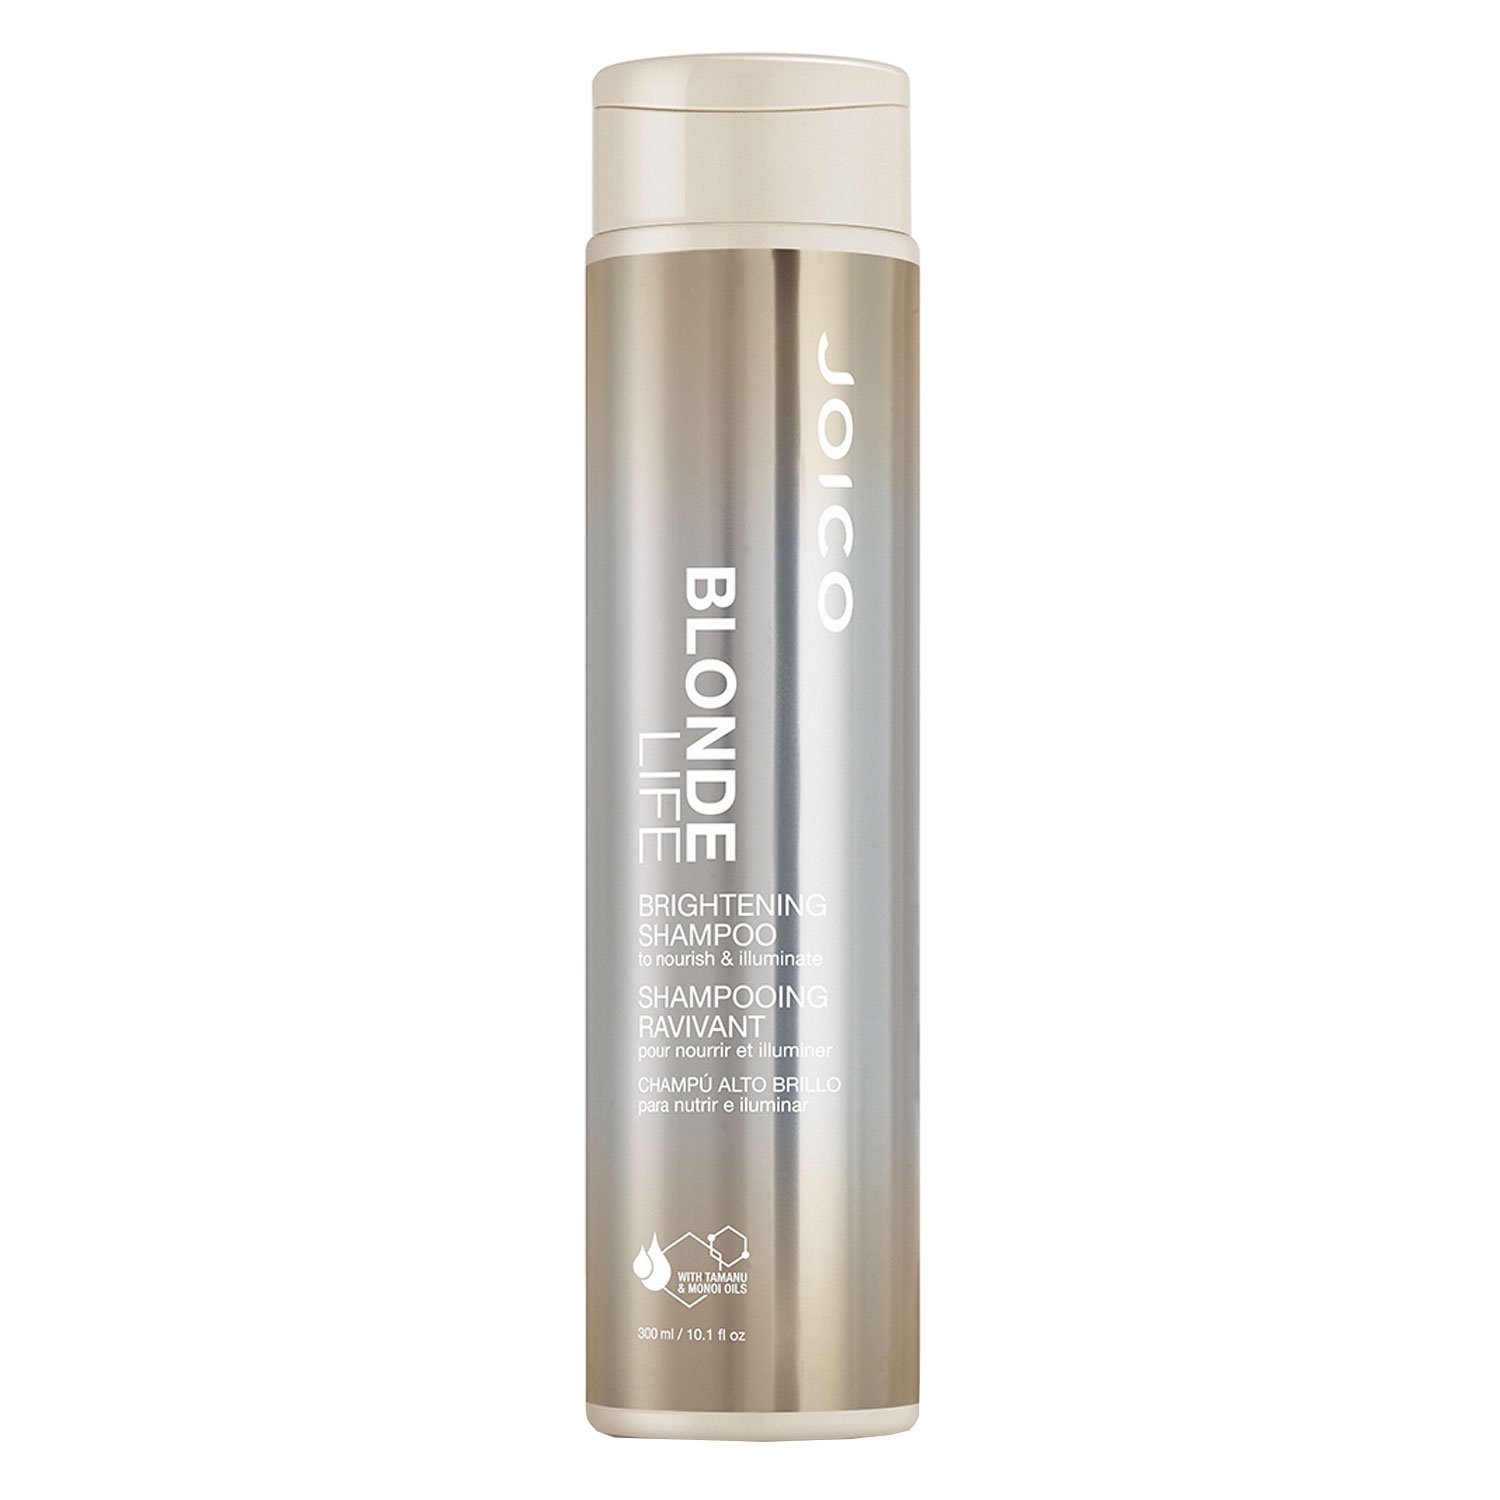 Produktbild von Blonde Life - Brightening Shampoo